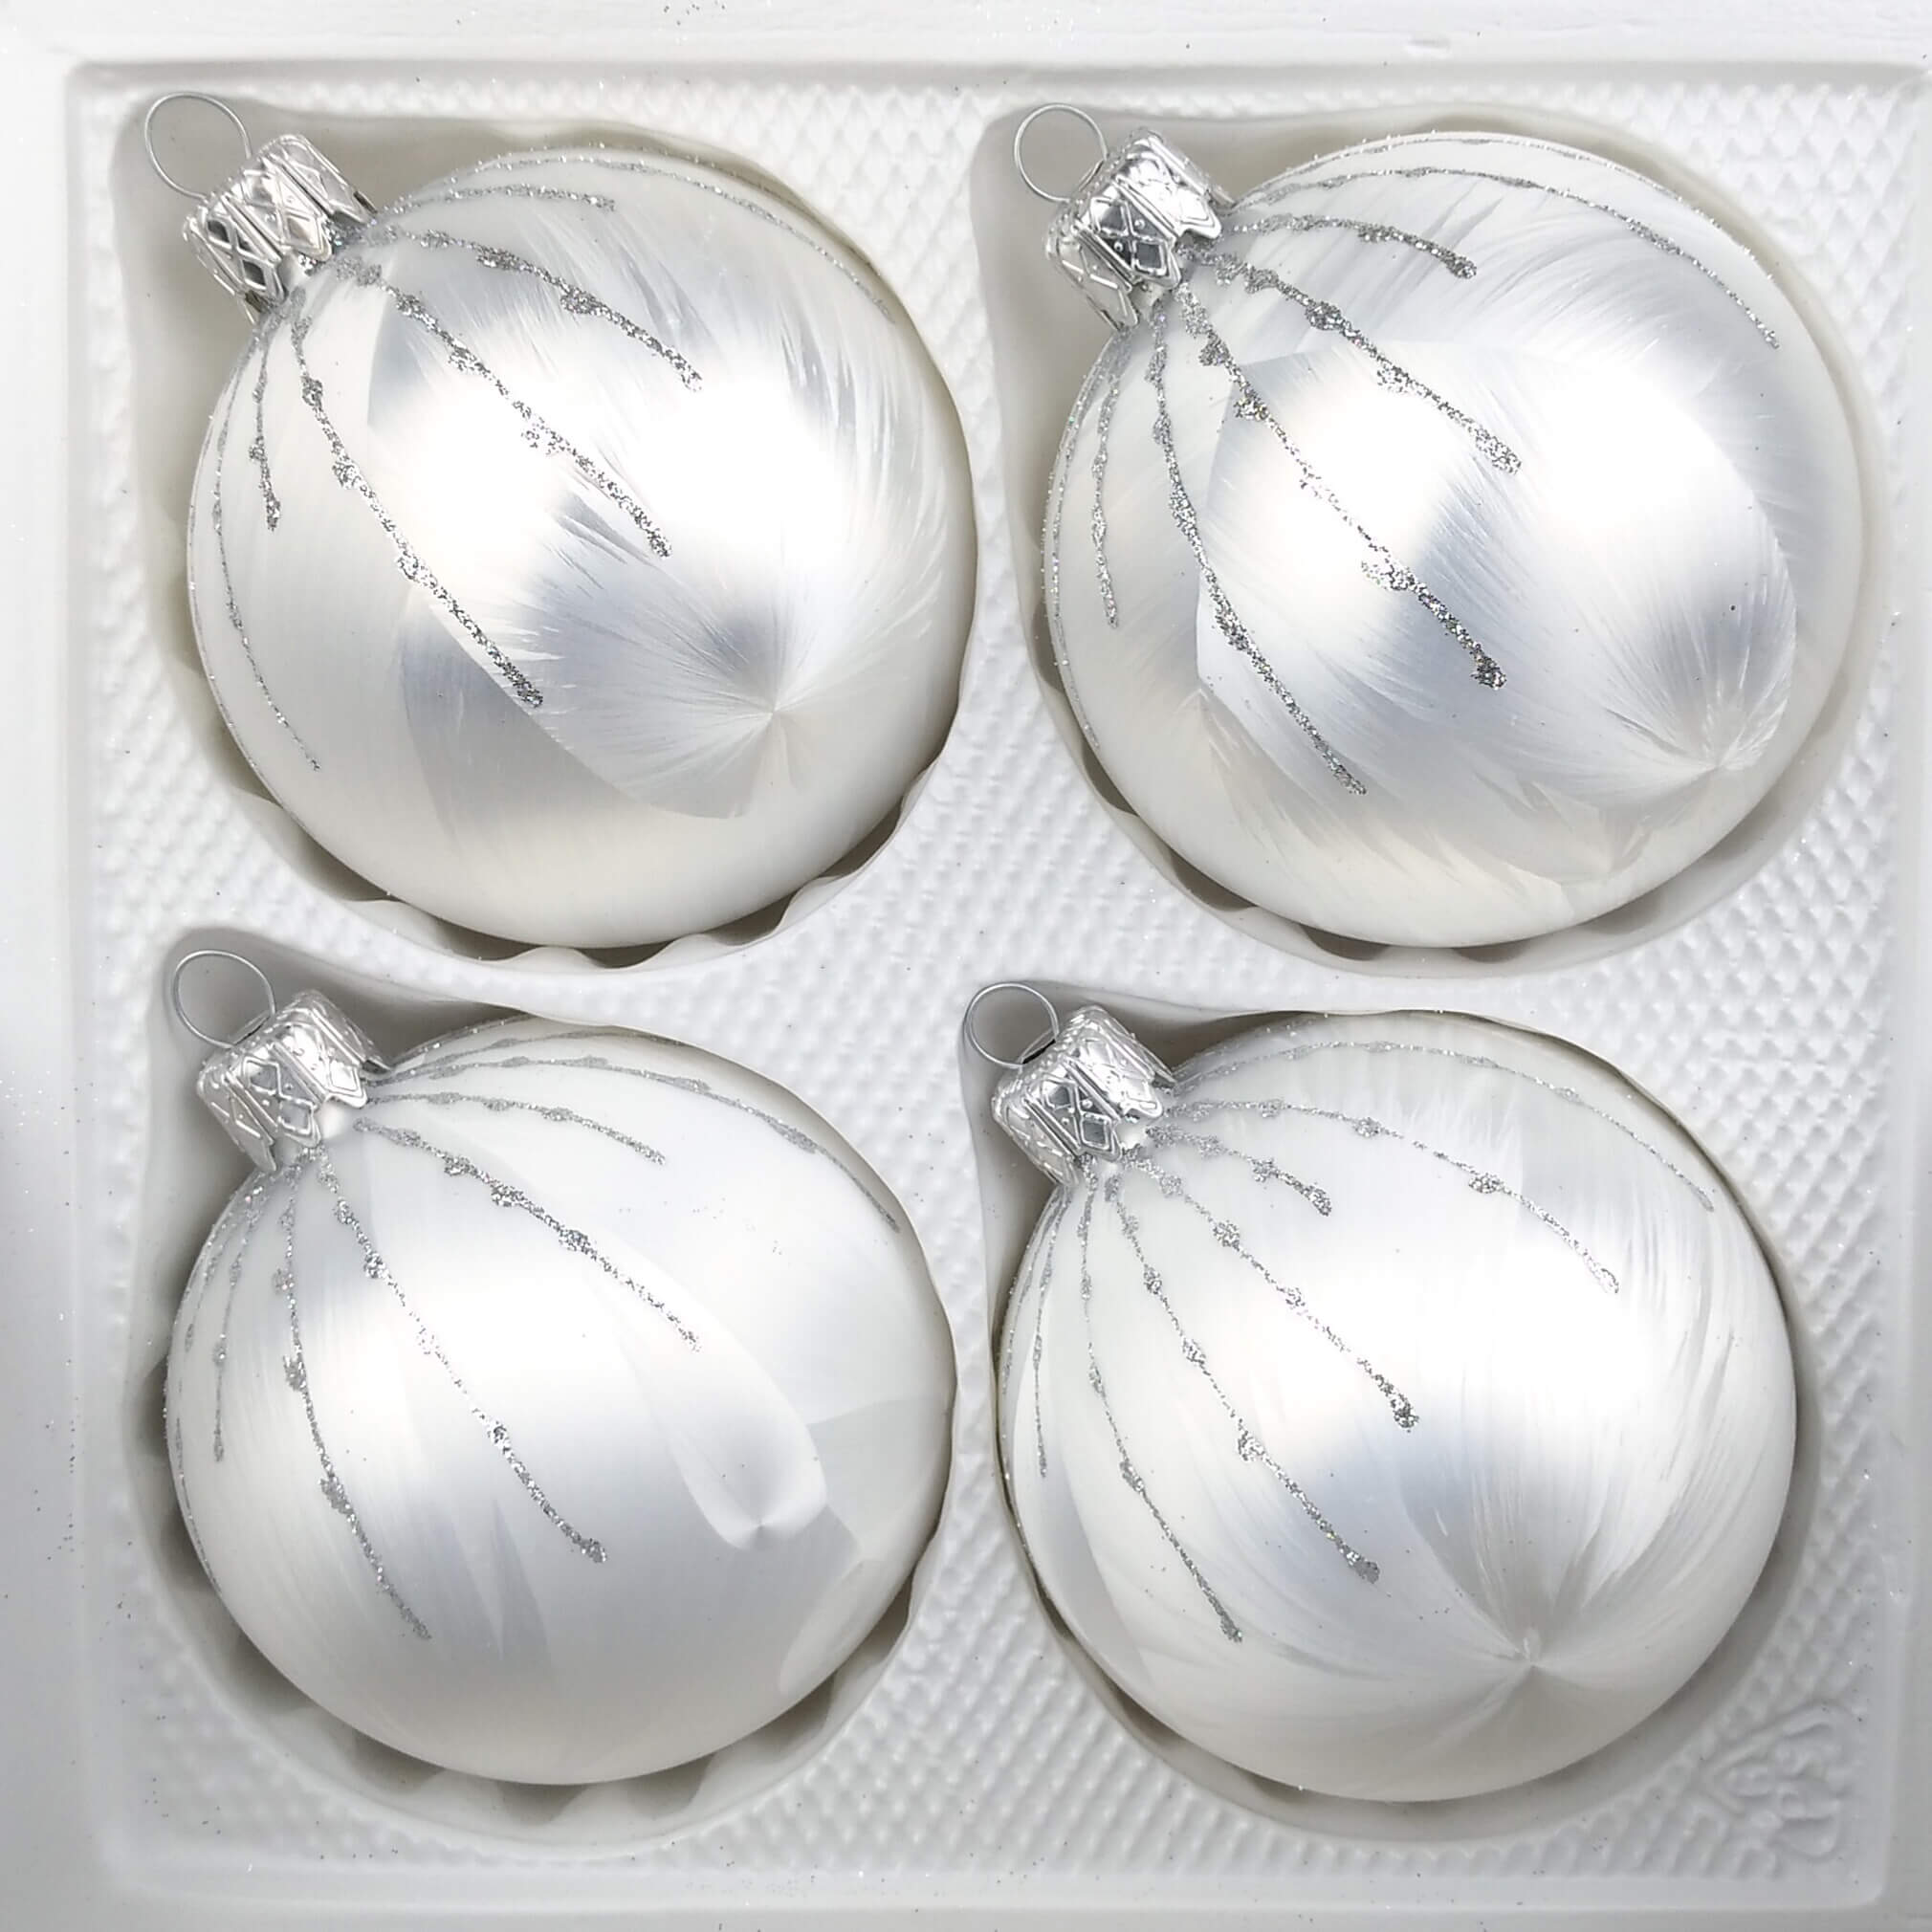 4 TLG Glas-Weihnachtskugeln Set 12cm /Ø in Ice Weiss Silber Regen Christbaumkugeln Weihnachtsschmuck-Christbaumschmuck 12cm Durchmesser